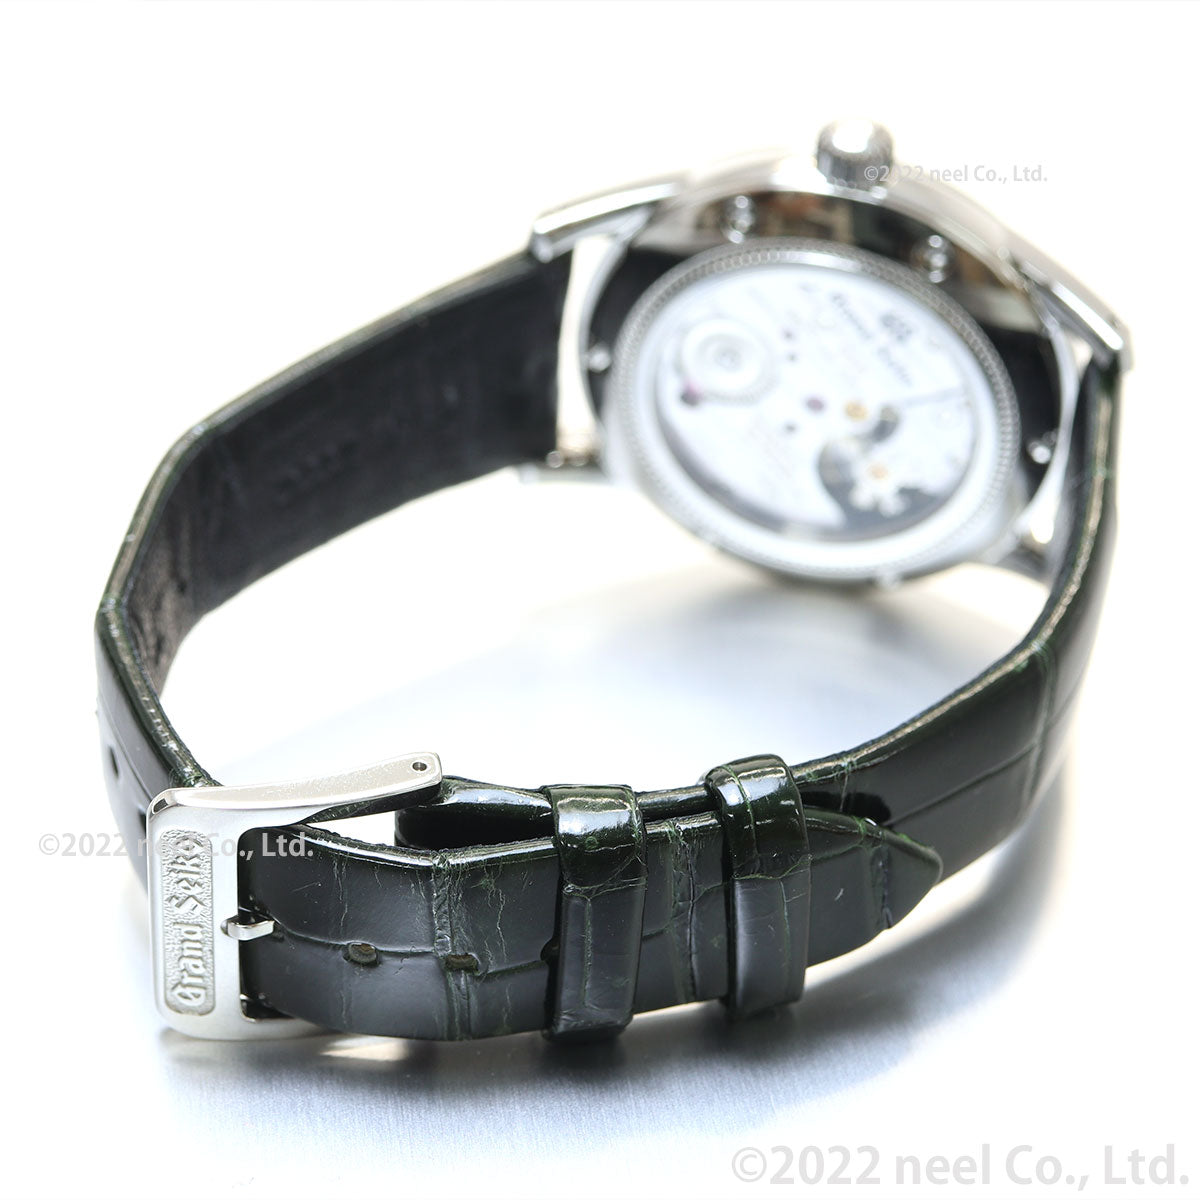 【36回分割手数料無料！】グランドセイコー GRAND SEIKO メカニカル 手巻き 革ベルト 腕時計 メンズ Elegance Collection 杪夏 SBGW285